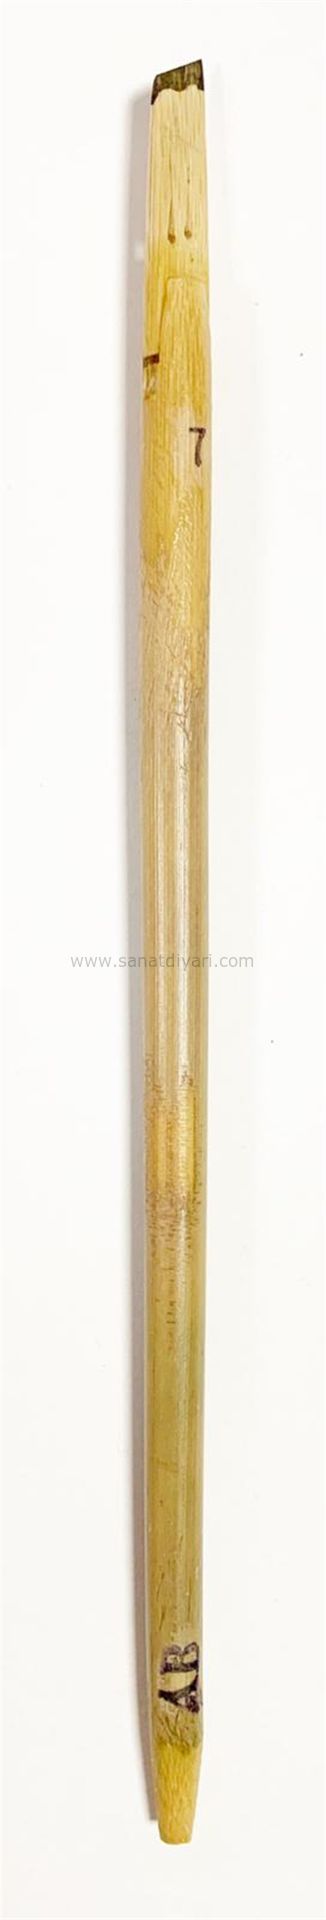 Tiryakiart Şaklı Bambu Kalem 7 mm